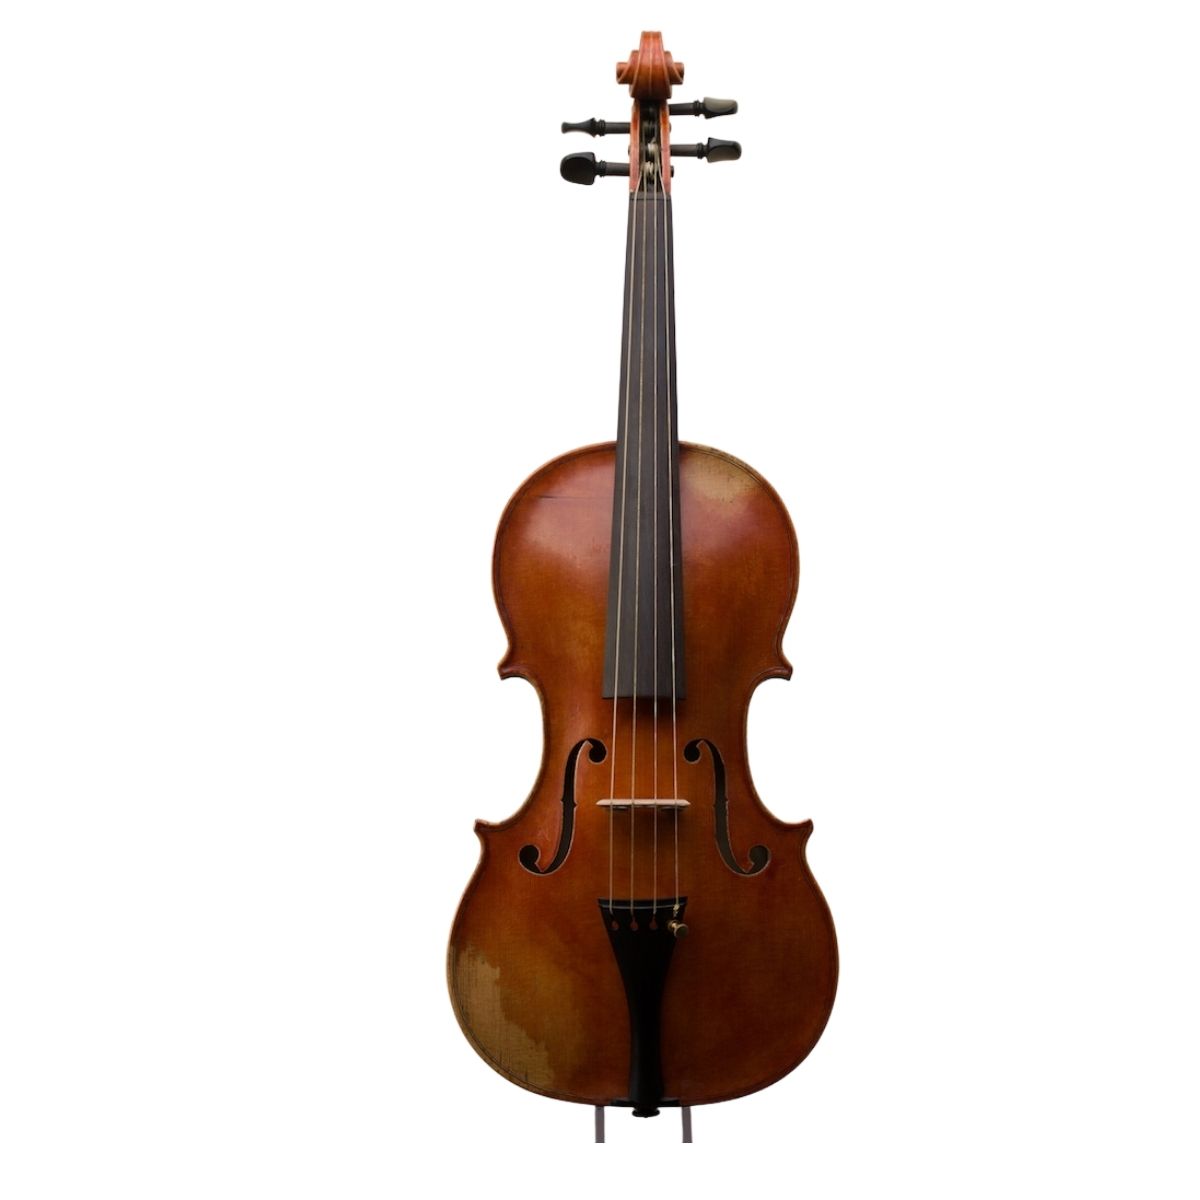 Antiqued Nicolo Amati violin - Lyons Violins